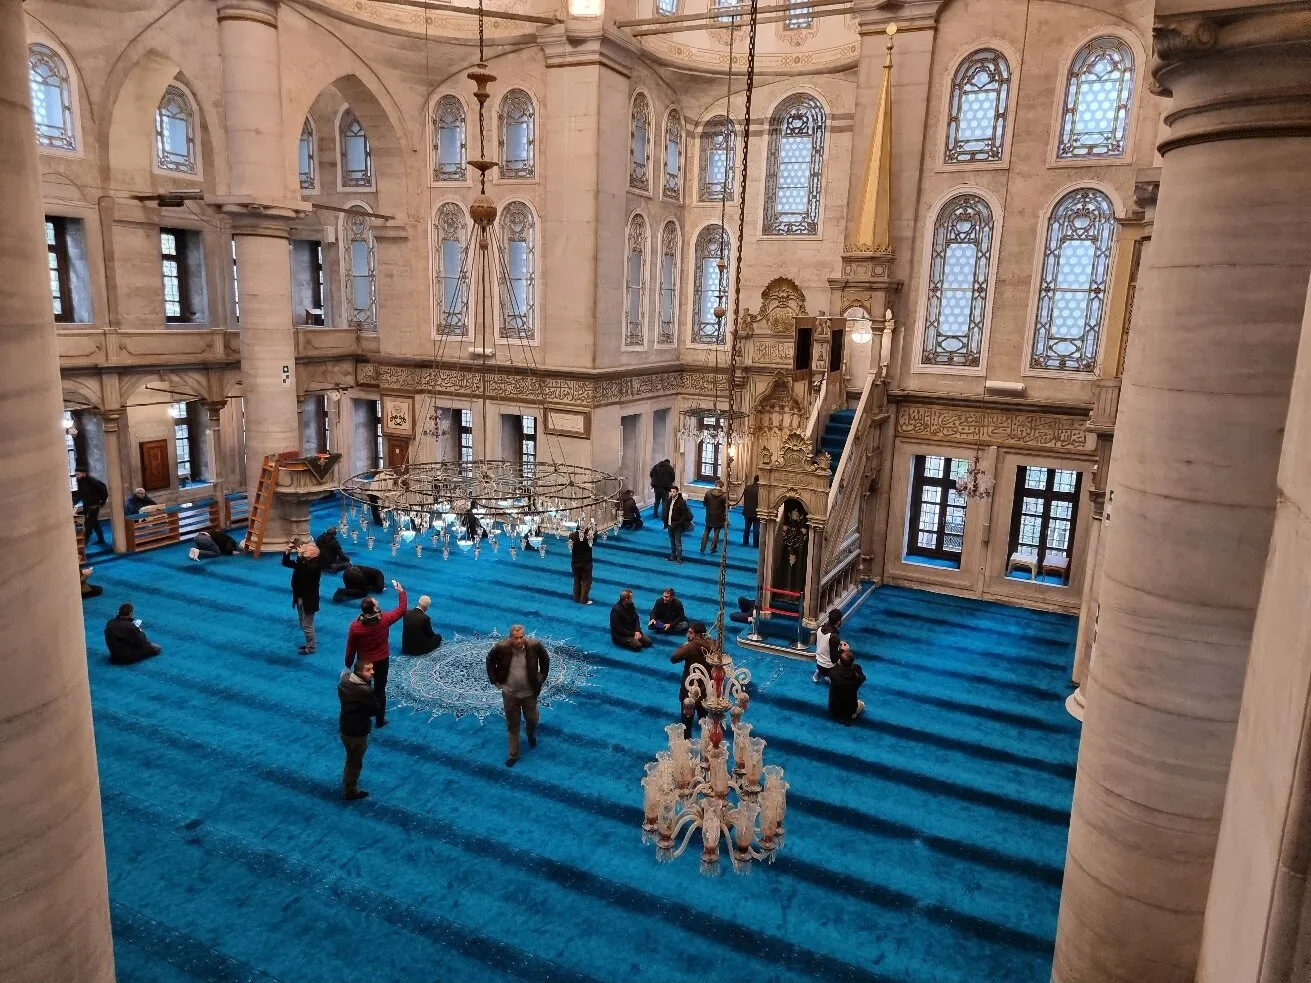 مسجد أيوب سلطان